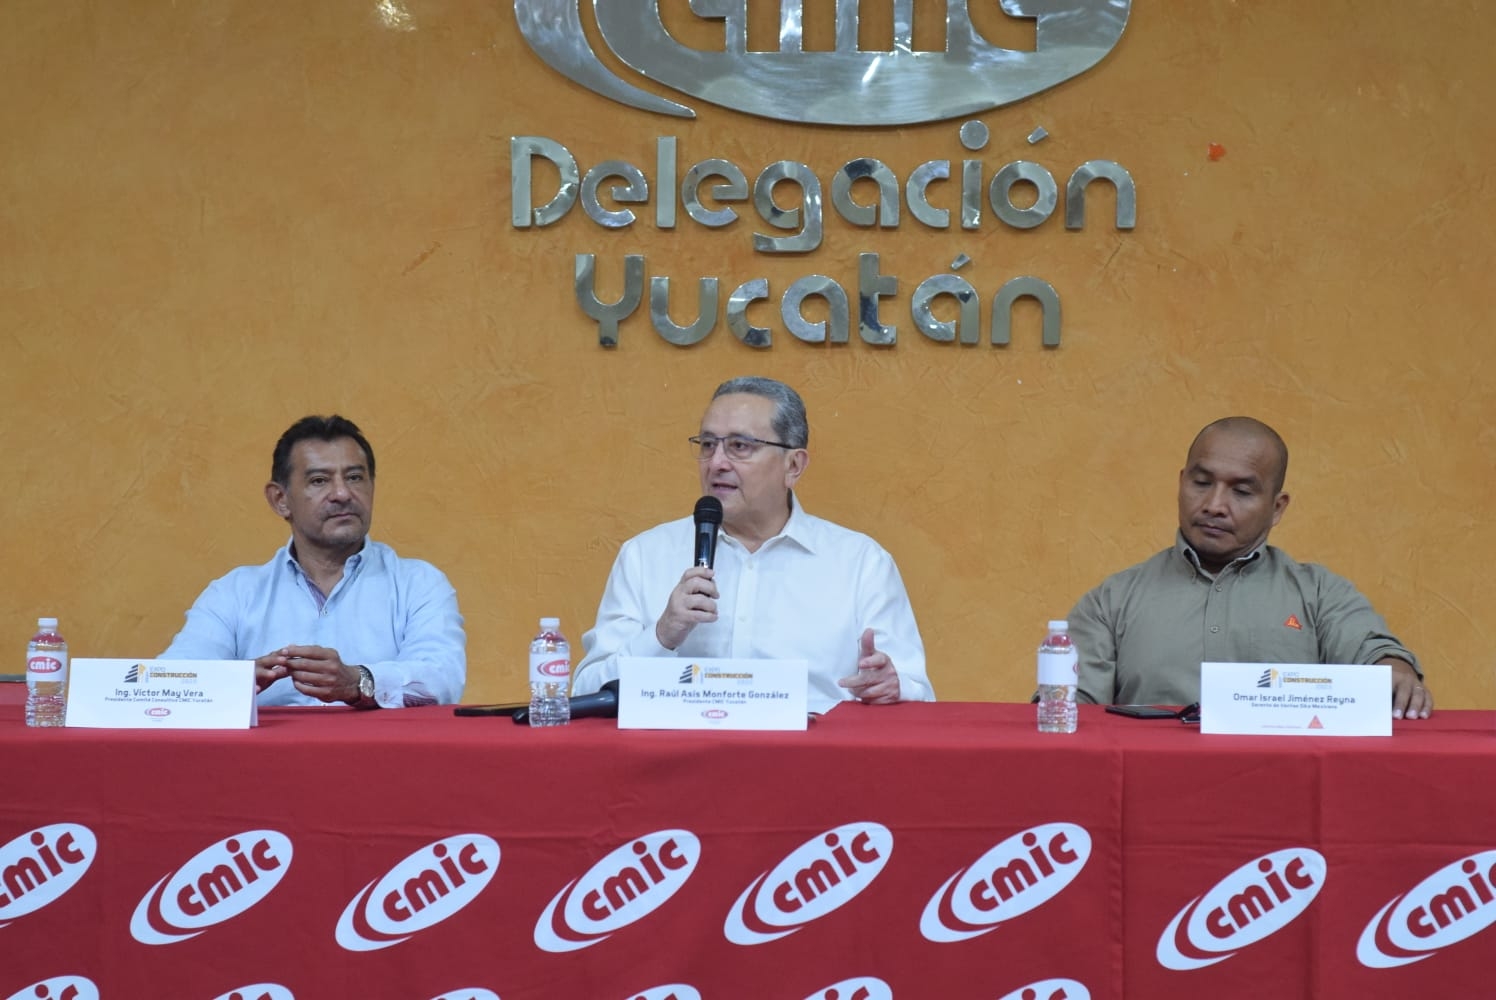 Raúl Monforte González, busca reelegirse, pero su rival es el ingeniero Alfonso G. Cantón Cetina